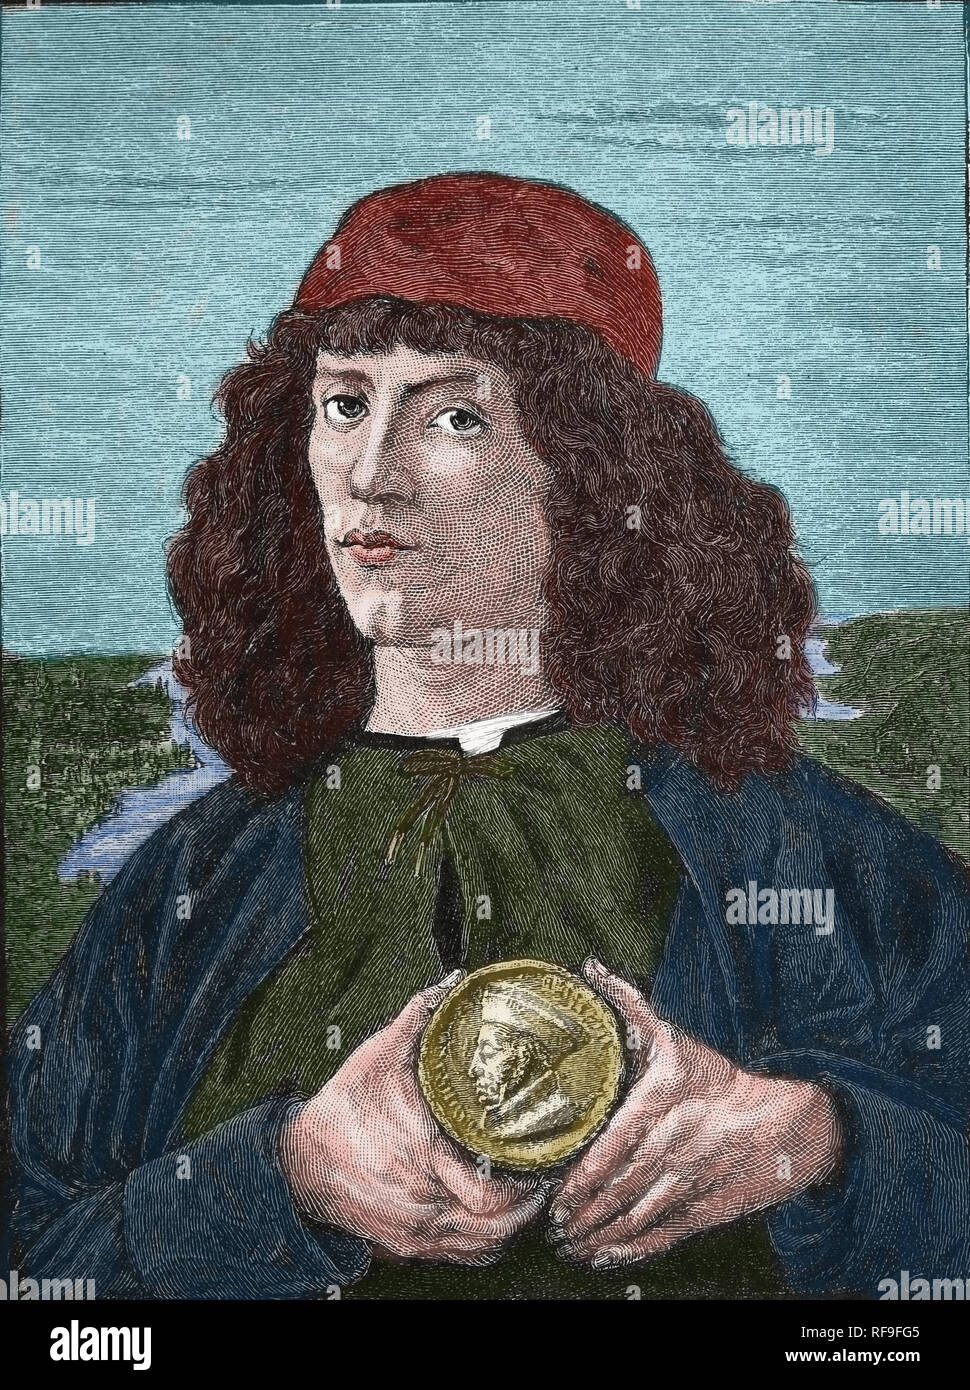 Portrait d'un homme avec une médaille de Cosme l'ancien, XVIe siècle. Peinture de Sandro Botticelli. Copie d'une gravure. Banque D'Images